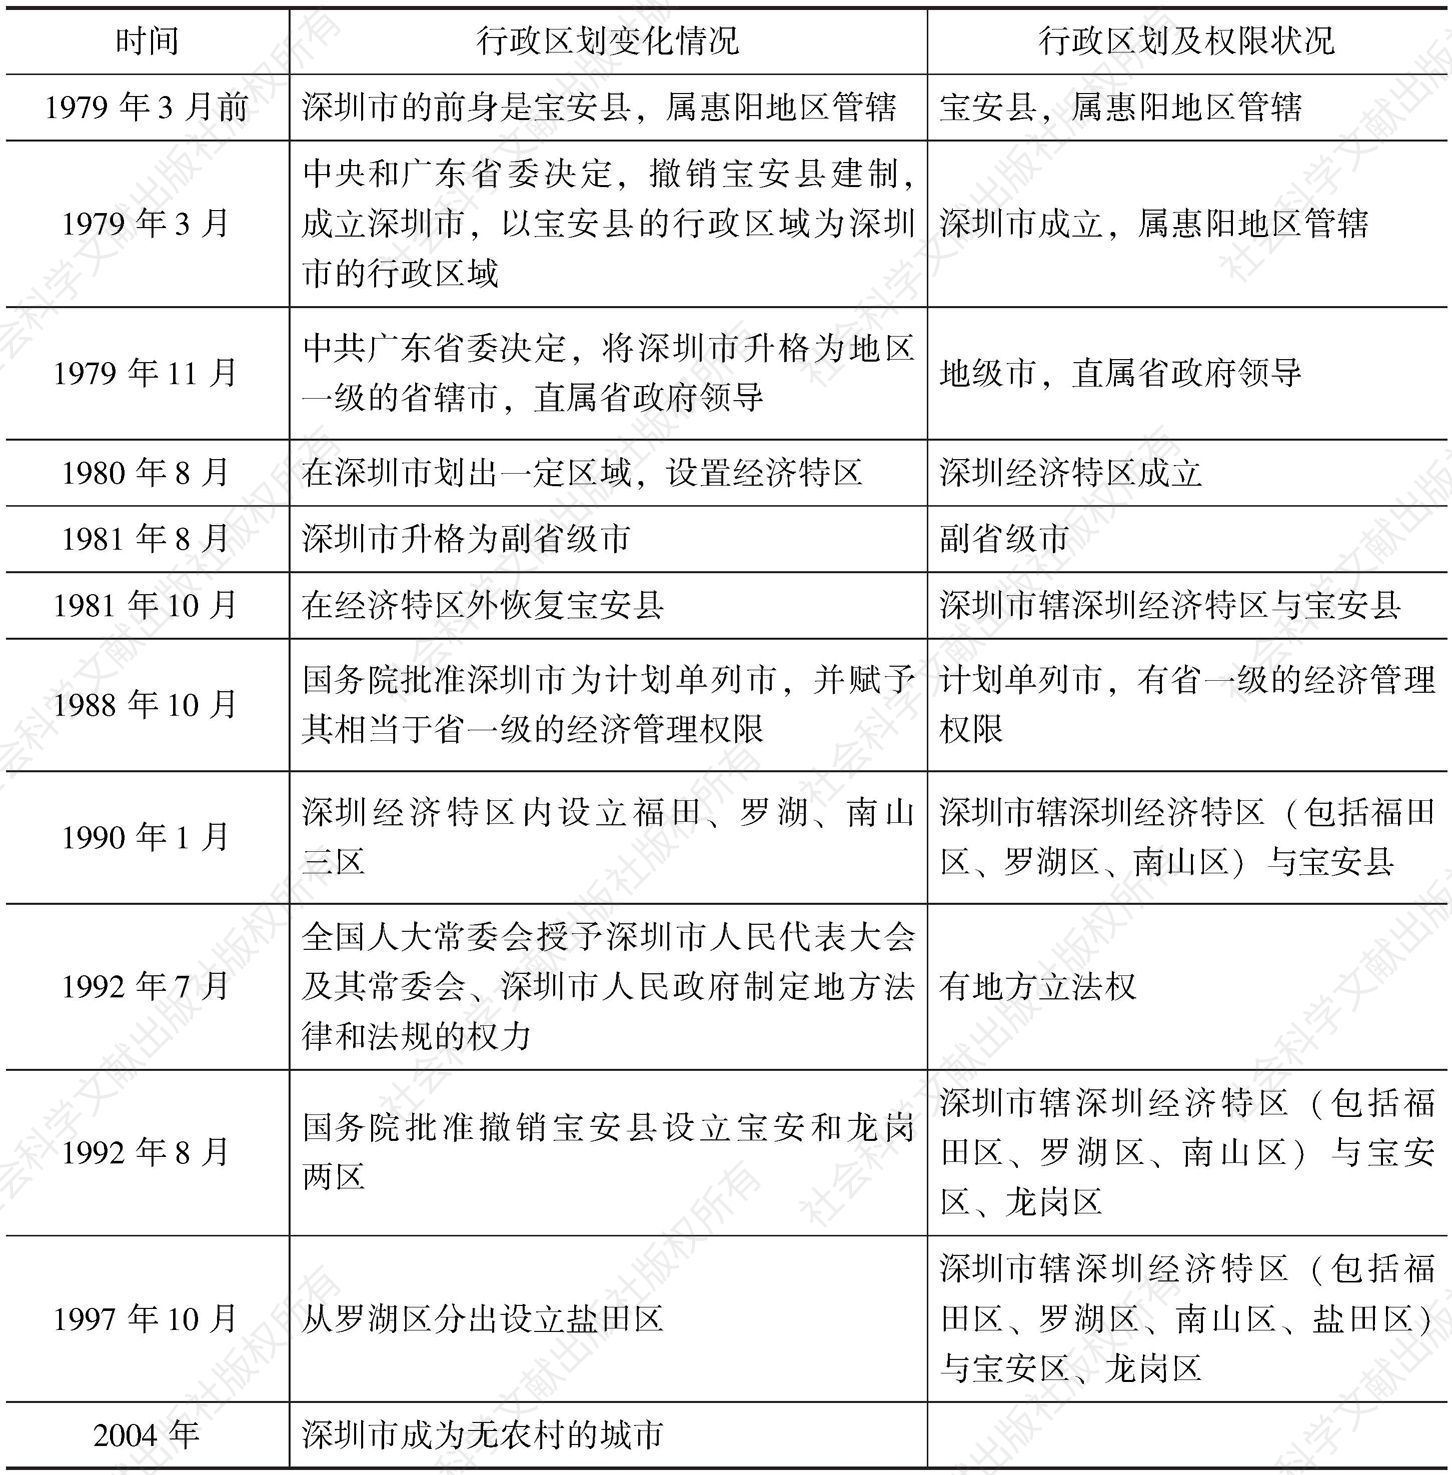 表2-1 深圳市行政区划及权限变迁情况